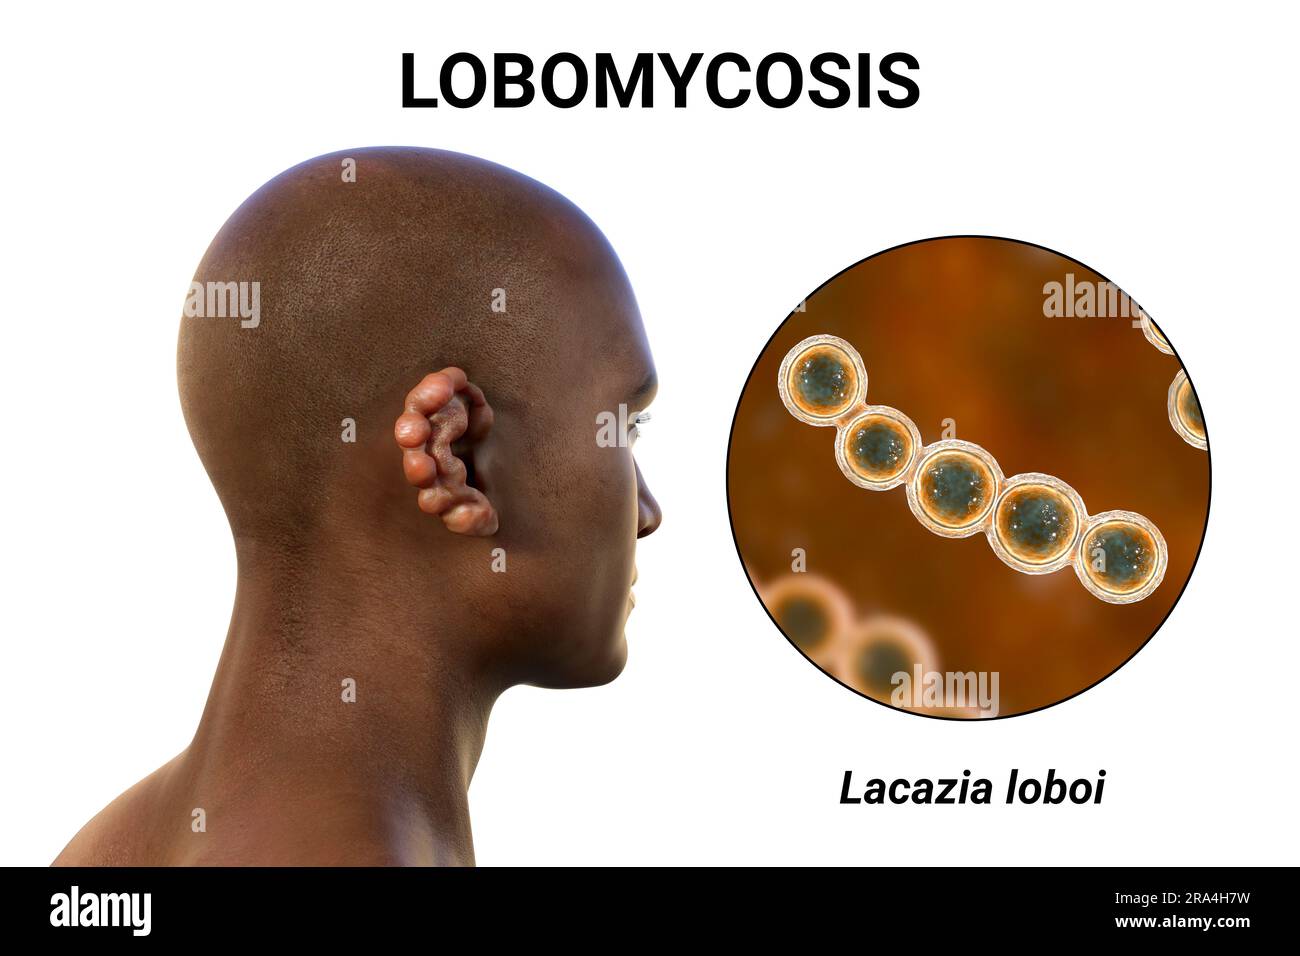 Lobomycosis fungal infection, illustration Stock Photo